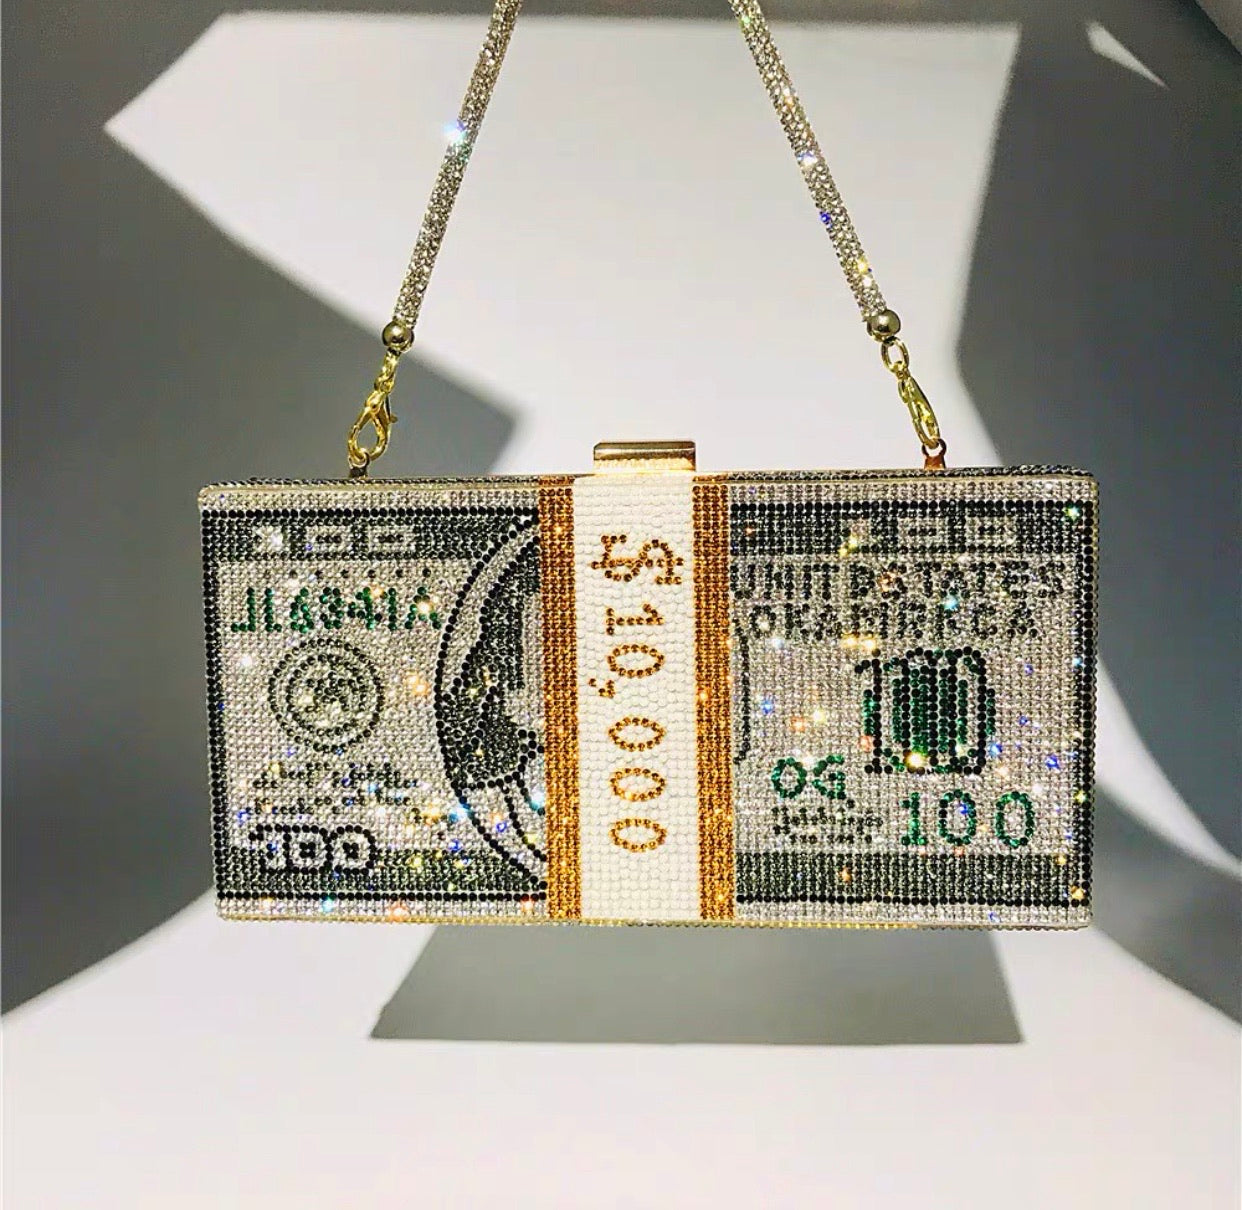 Cristain Dollar bag